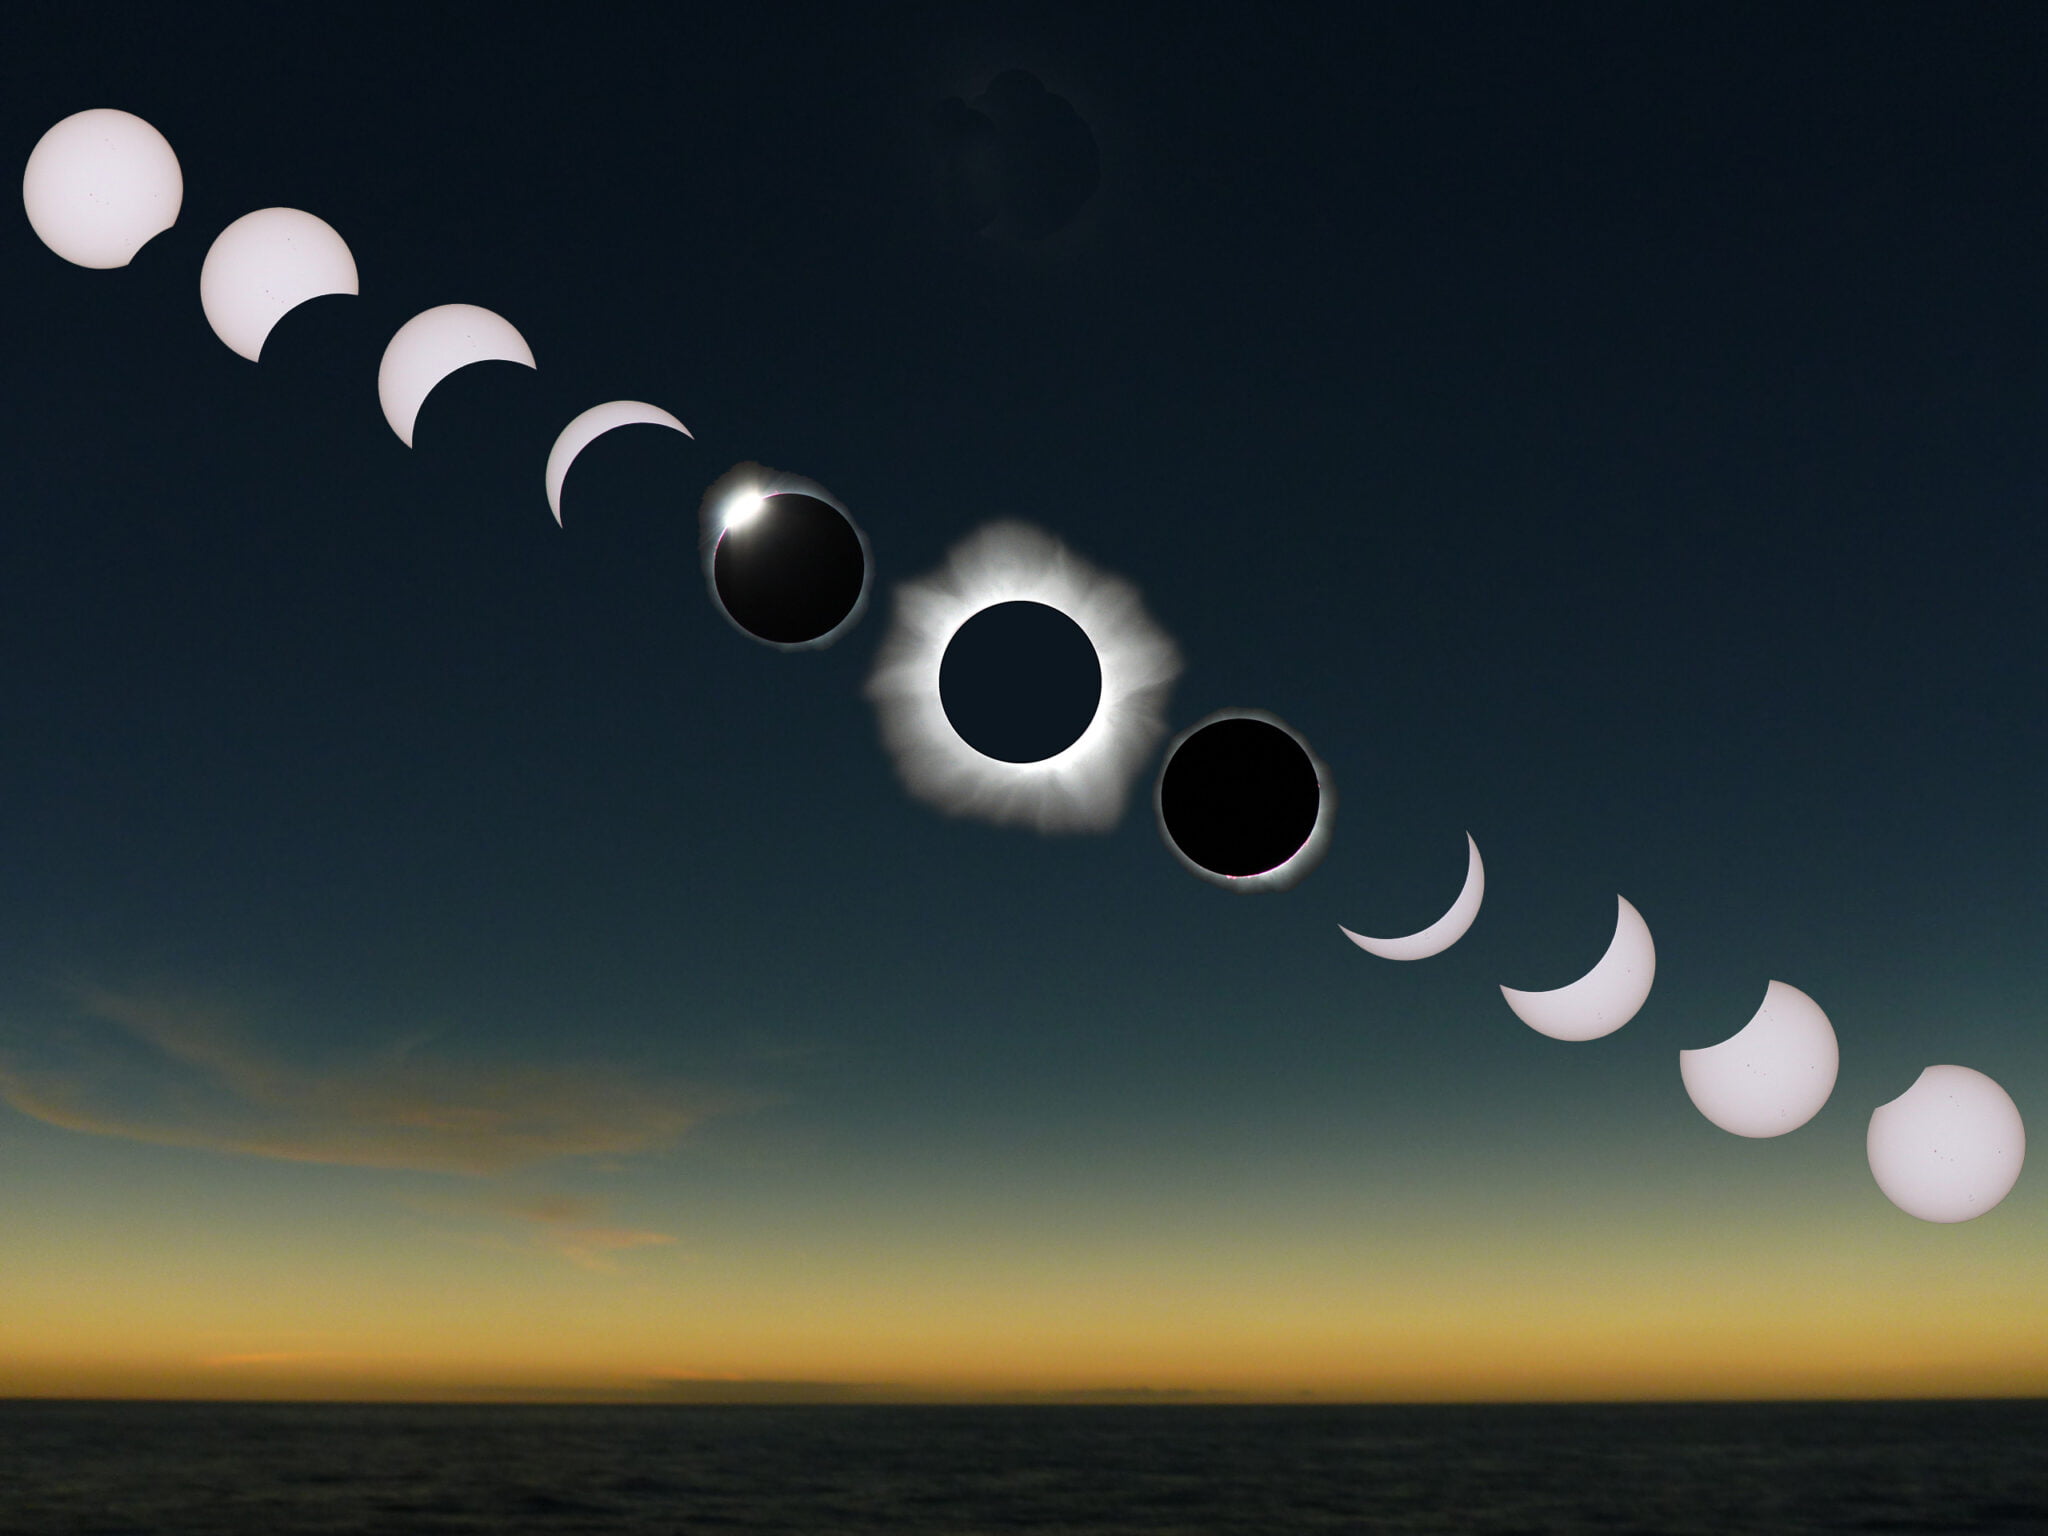 Eclipse Sequence 2 Rickfienberg 2048x1536 